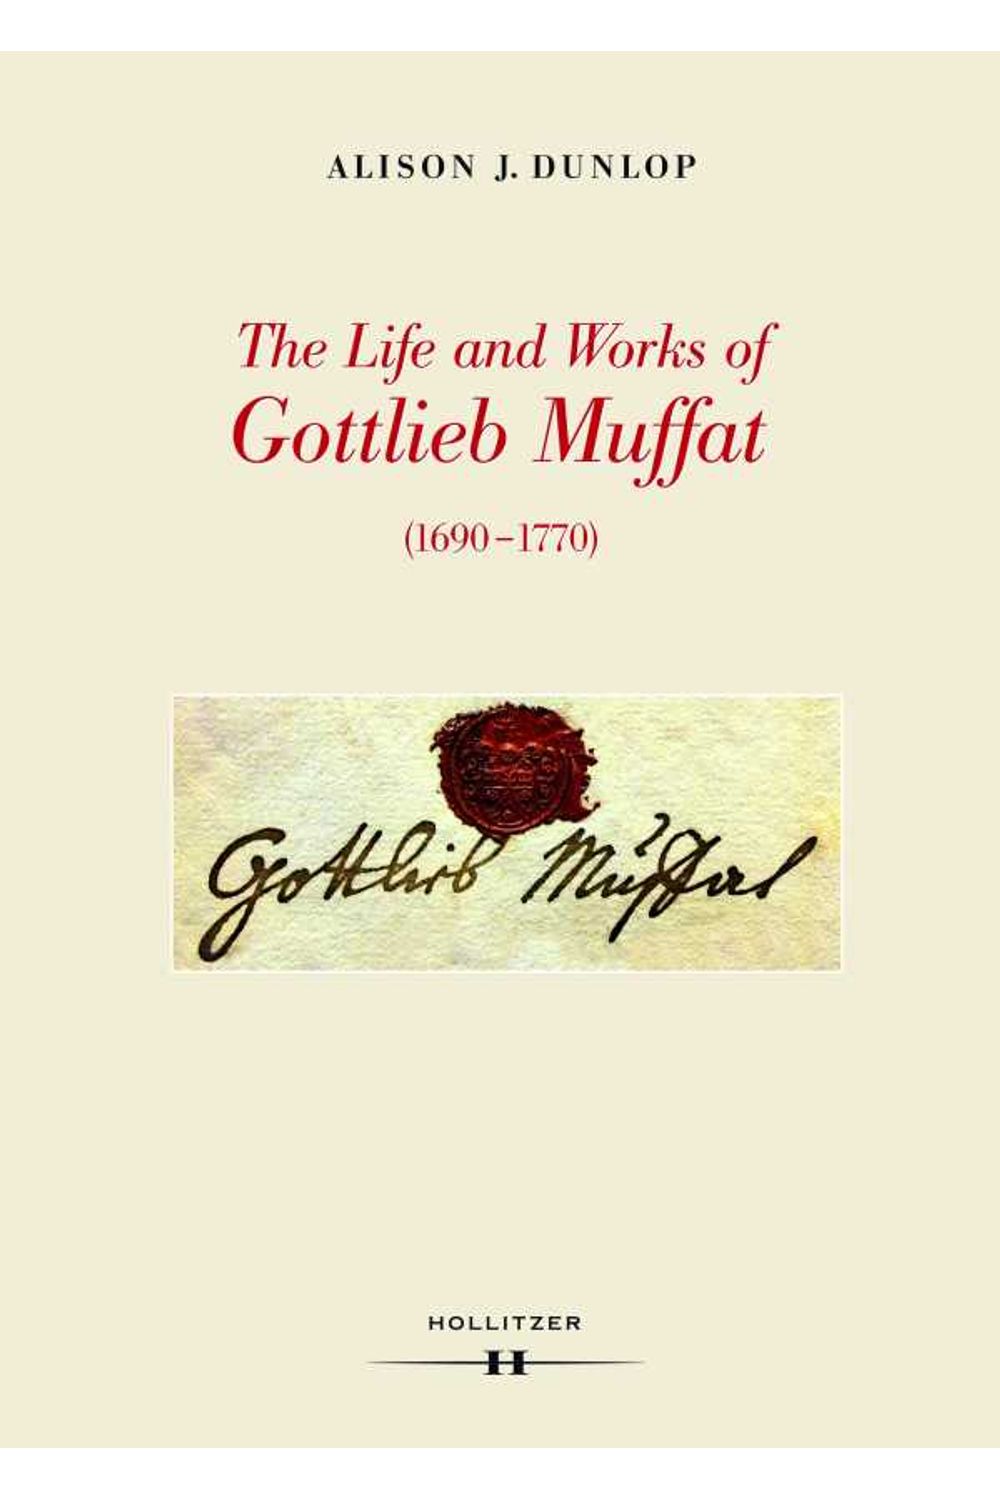 bw-the-life-and-works-of-gottlieb-muffat-16901770-hollitzer-wissenschaftsverlag-9783990120866